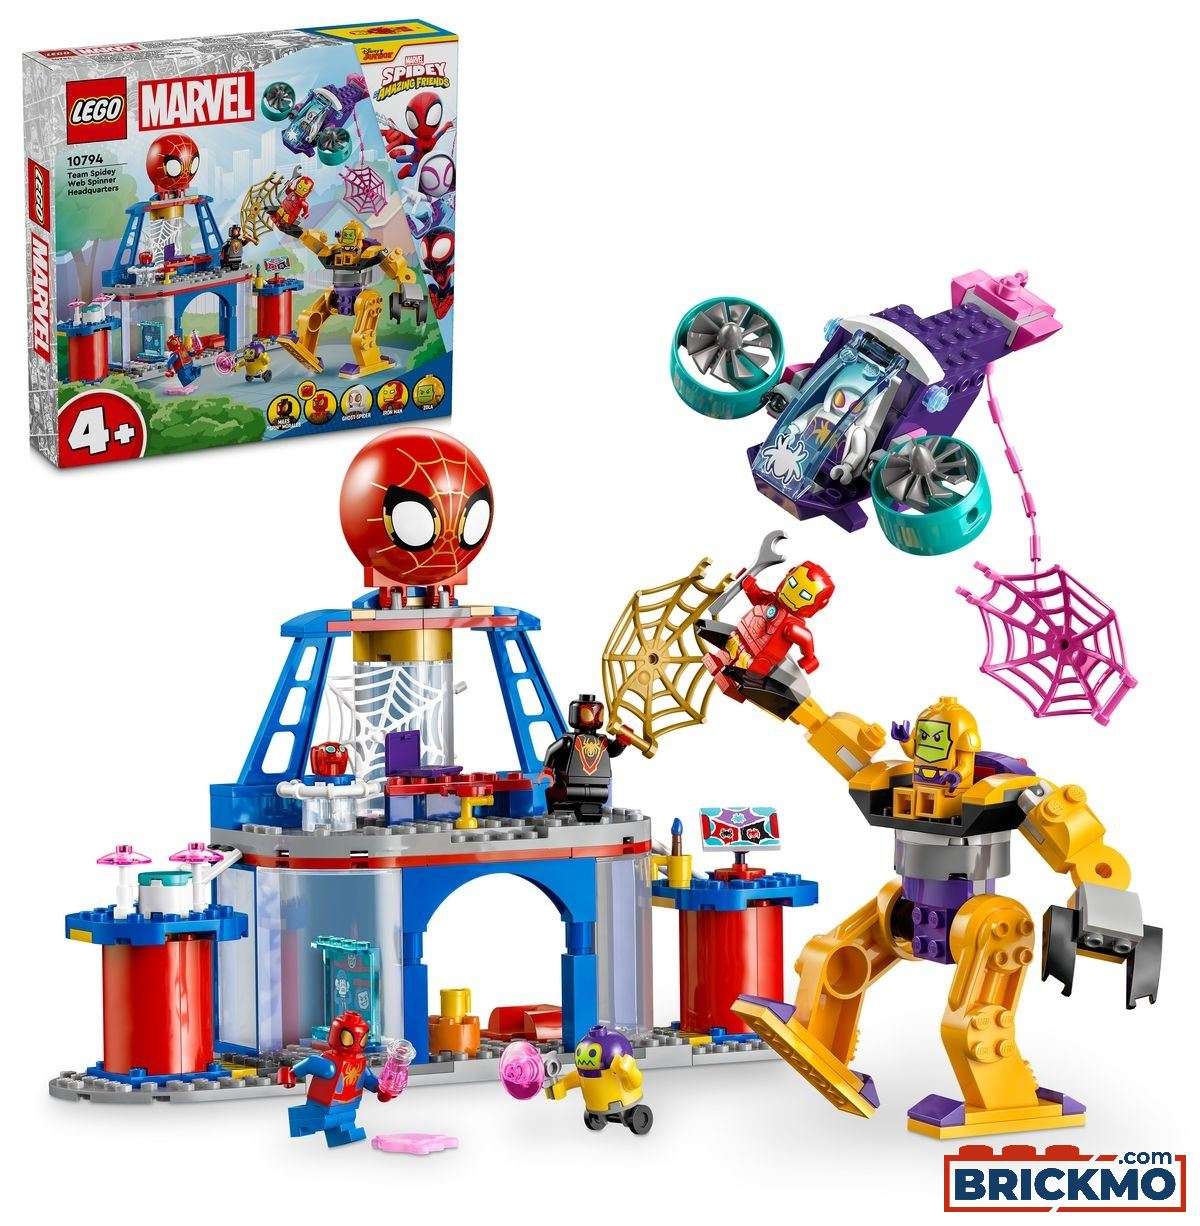 LEGO Marvel 10794 Das Hauptquartier von Spideys Team 10794